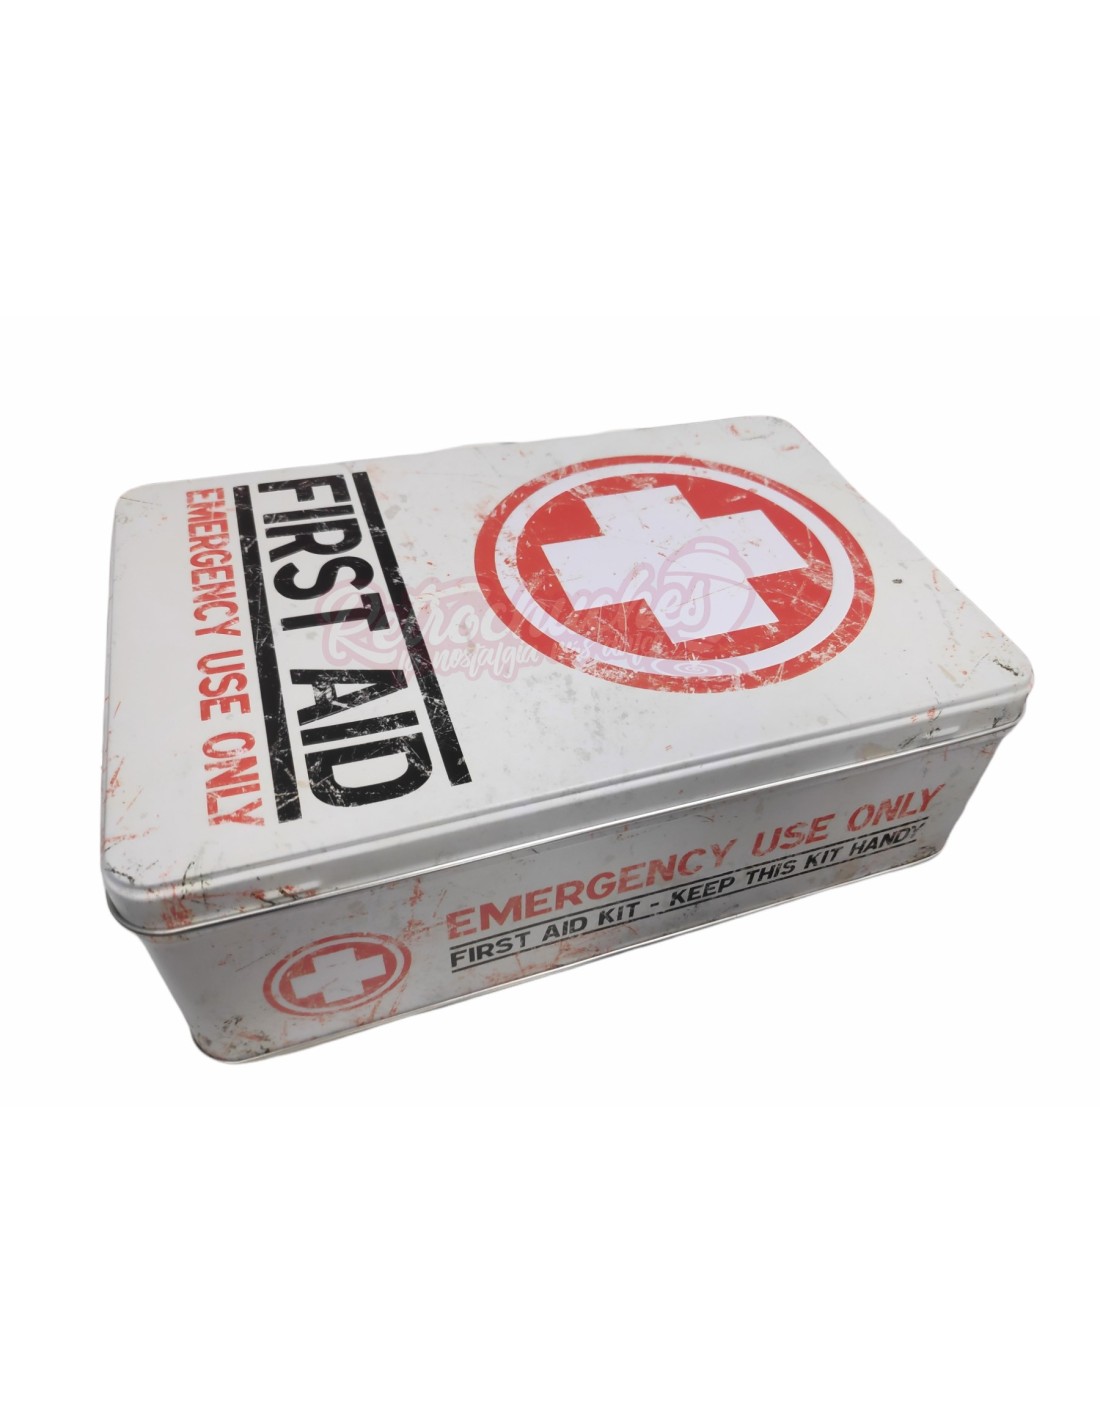 Botiquín Caja Metálica Retro Vintage Vacía First Aid